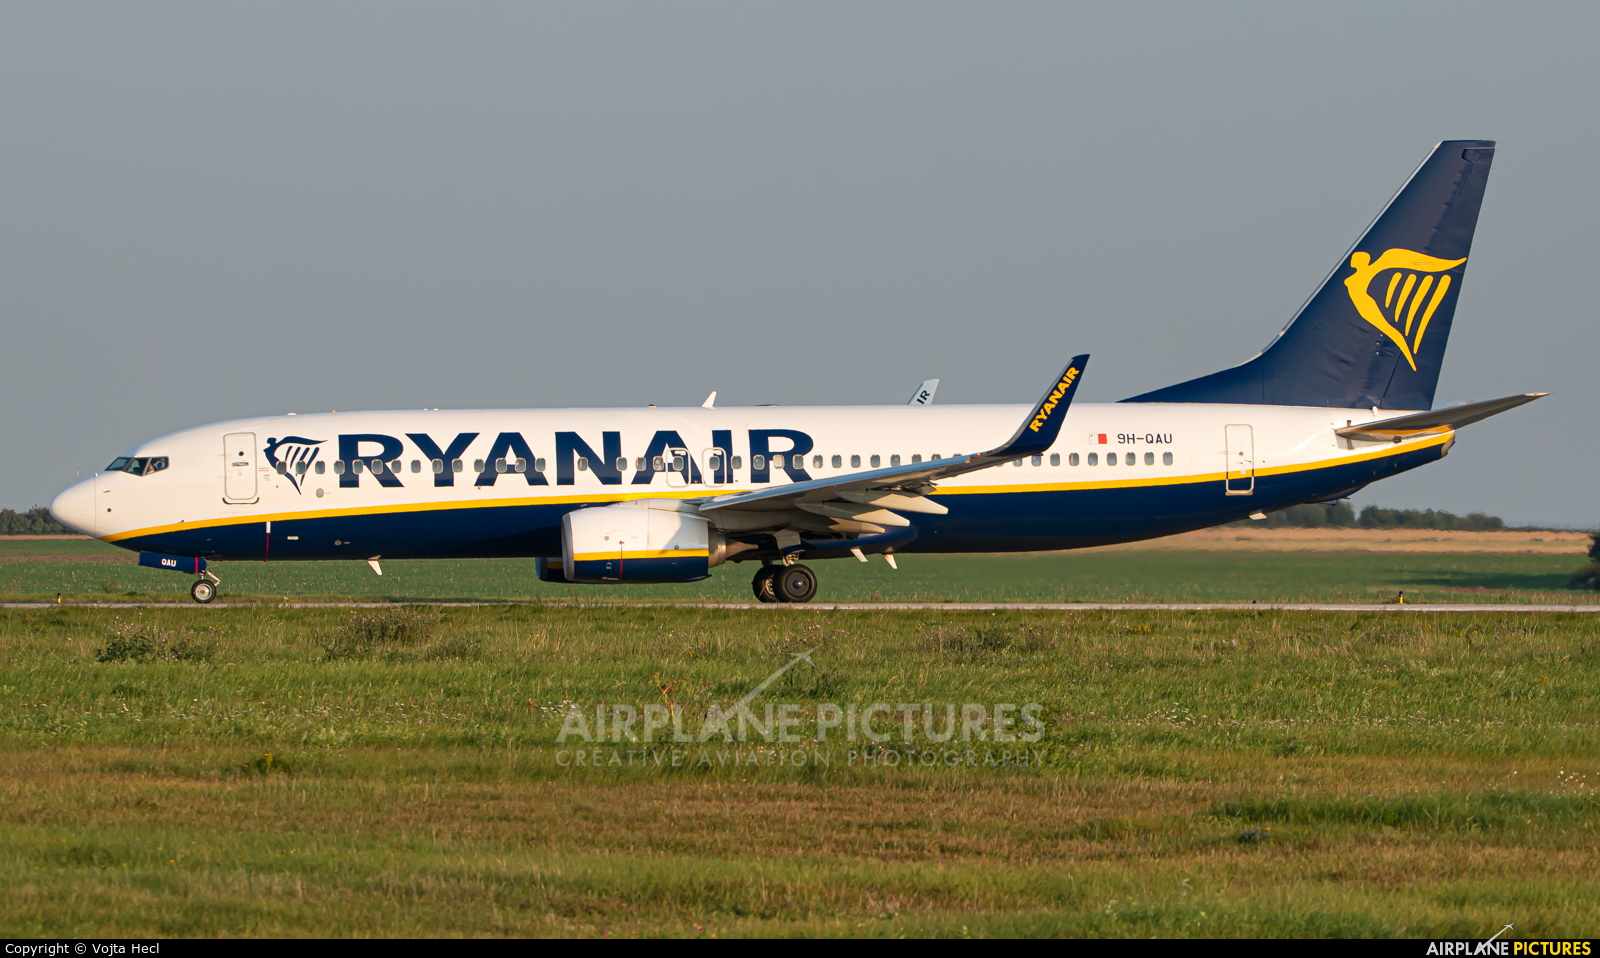 Ryanair 9H-QAU aircraft at Prague - Václav Havel